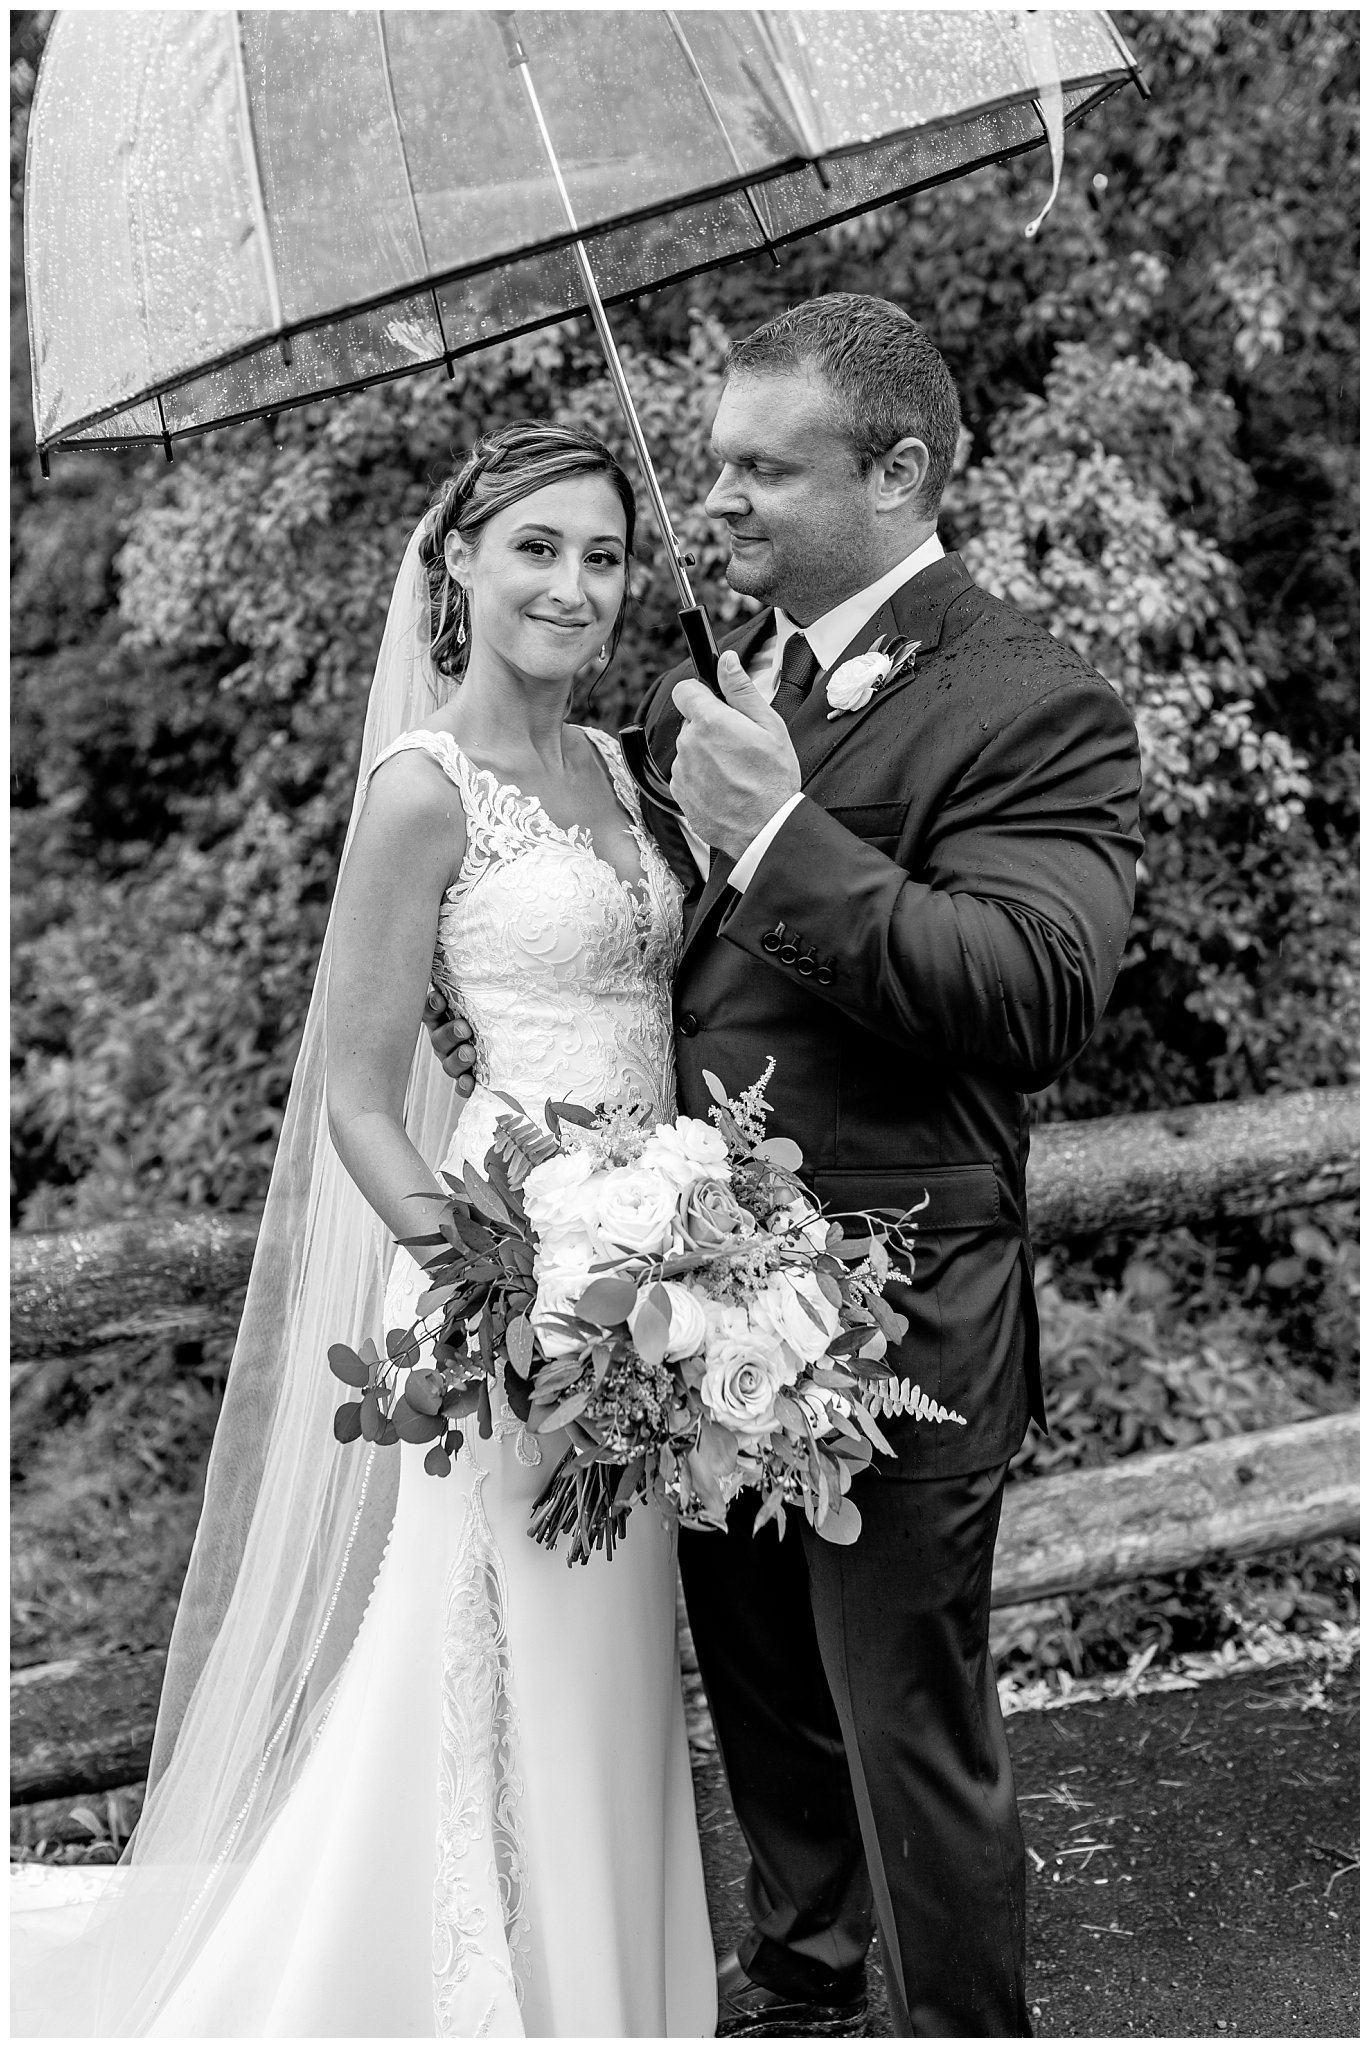 Chantelle Marie,Finger Lakes Wedding,Finger Lakes Wedding Photography,Joanna Young Photography,Syracuse Photographer,